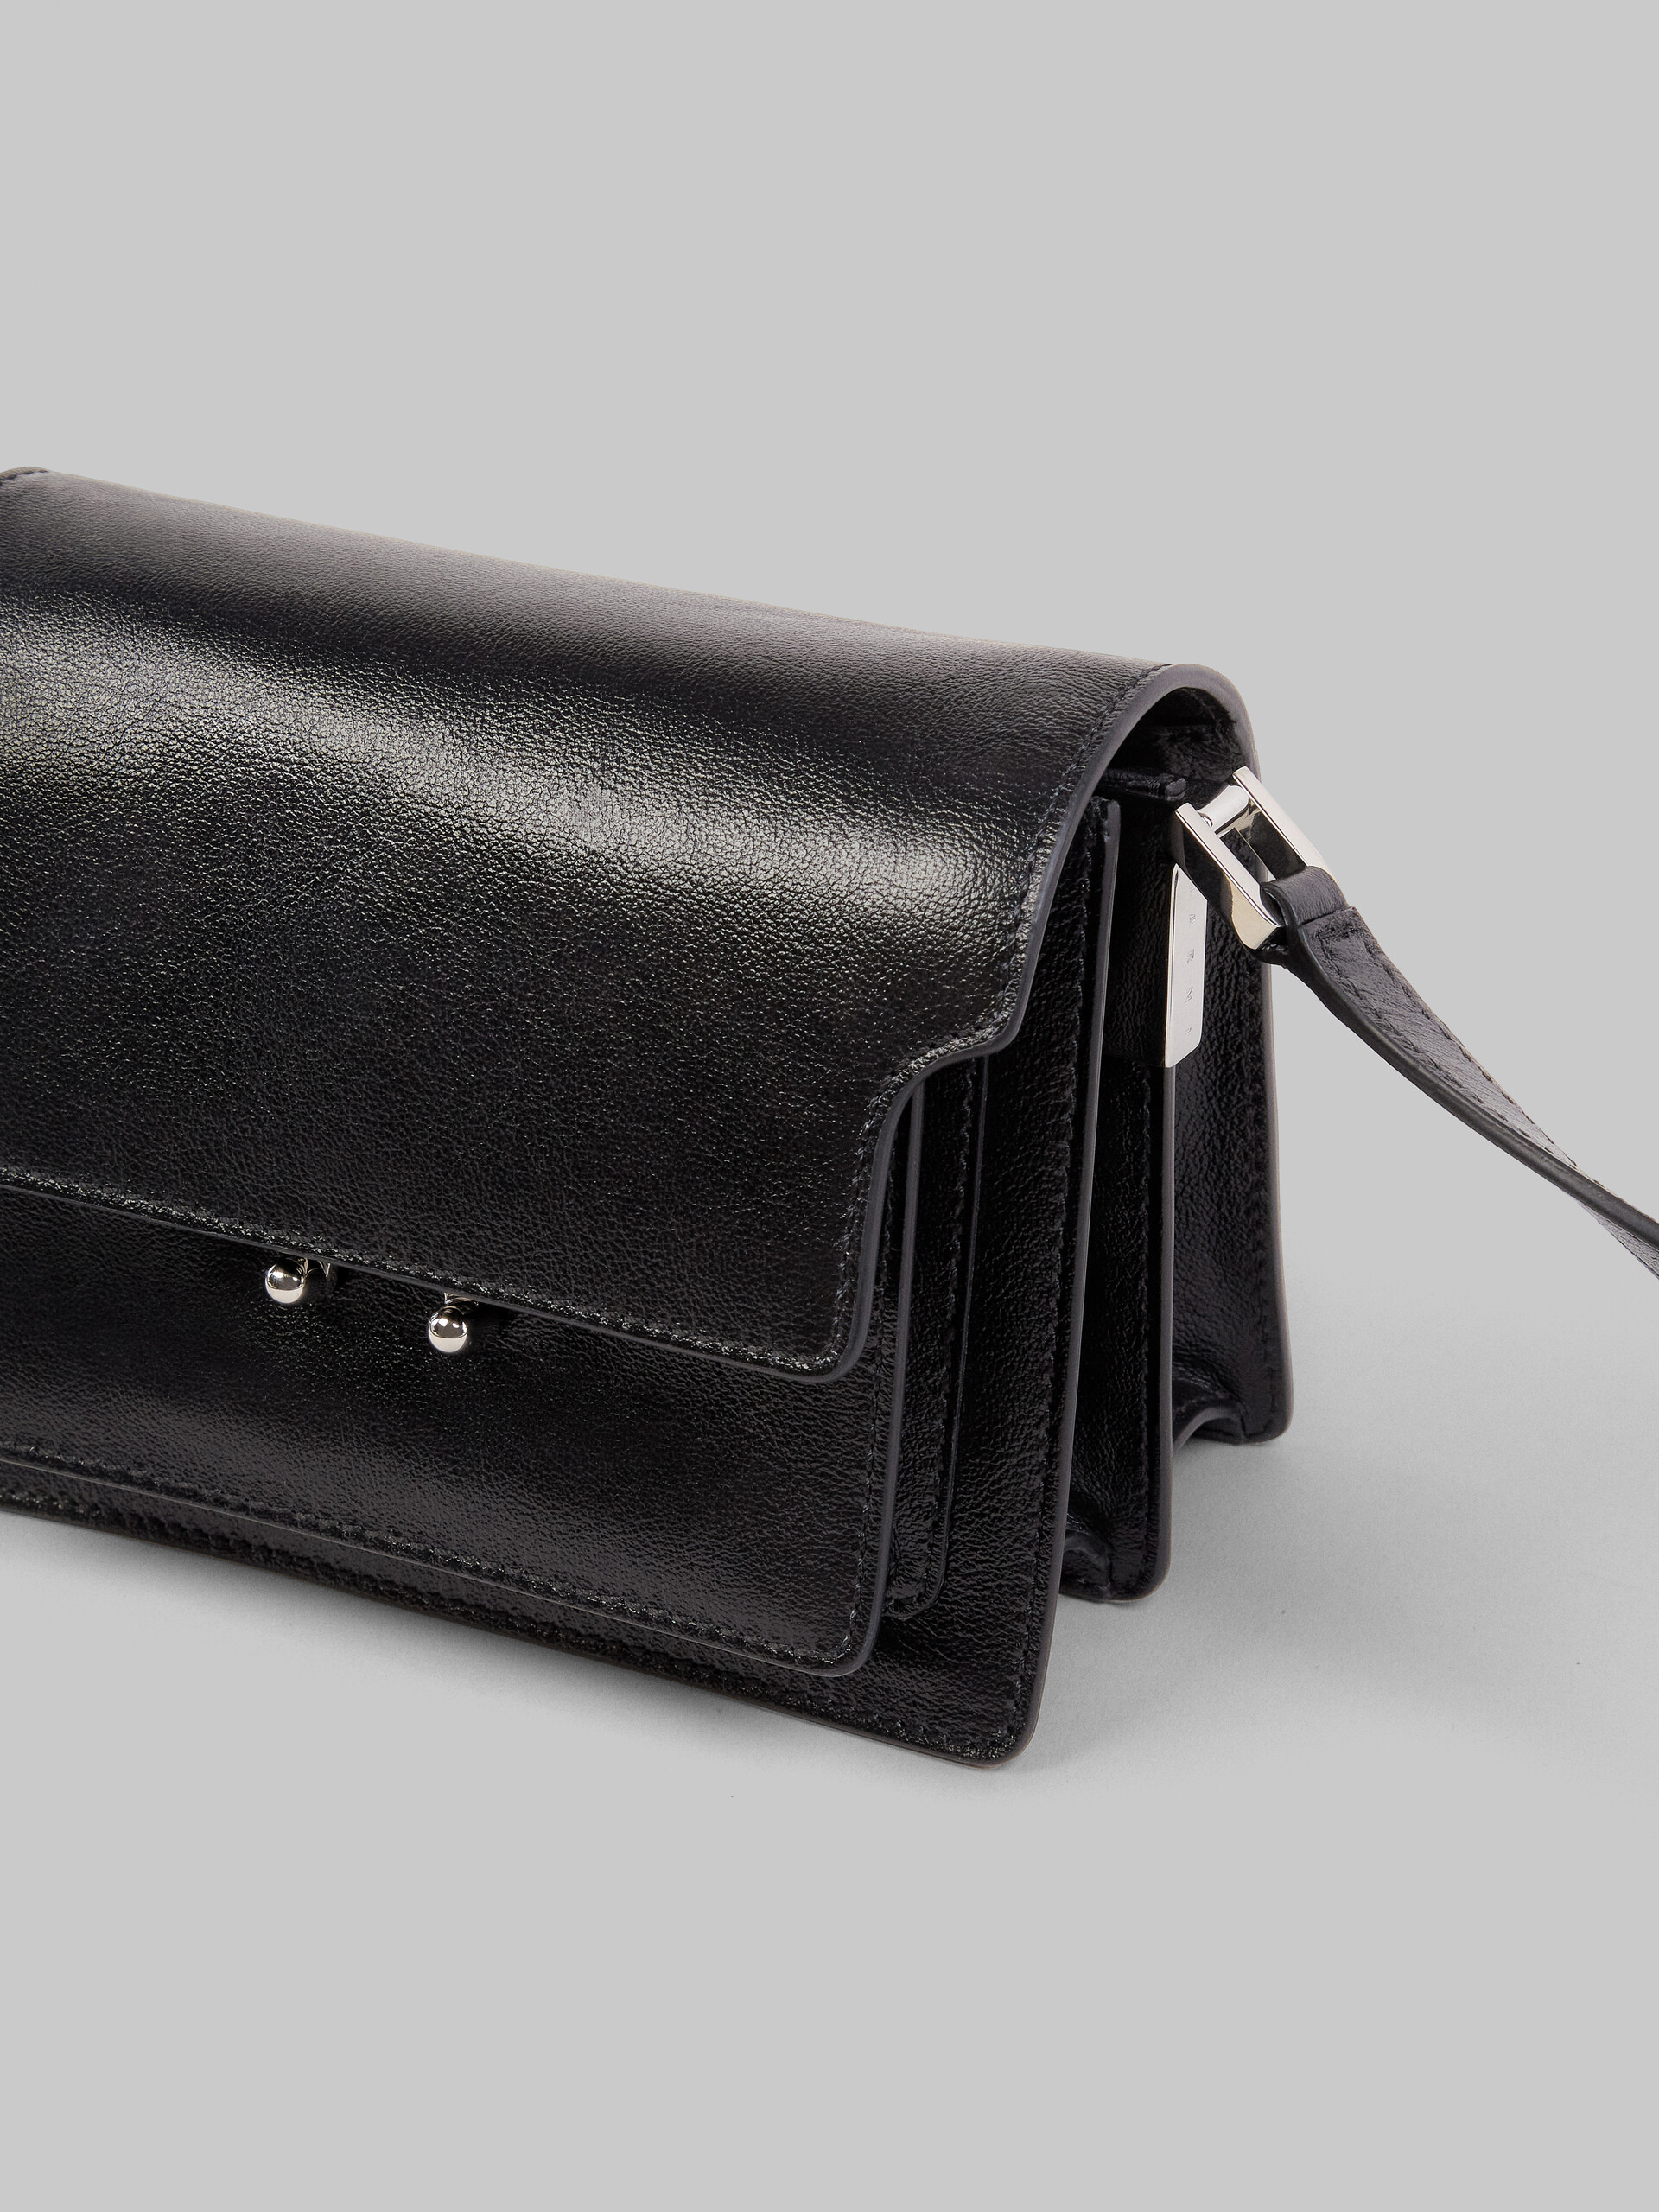 TRUNK SOFT bag mini in pelle nera - Borse a spalla - Image 4